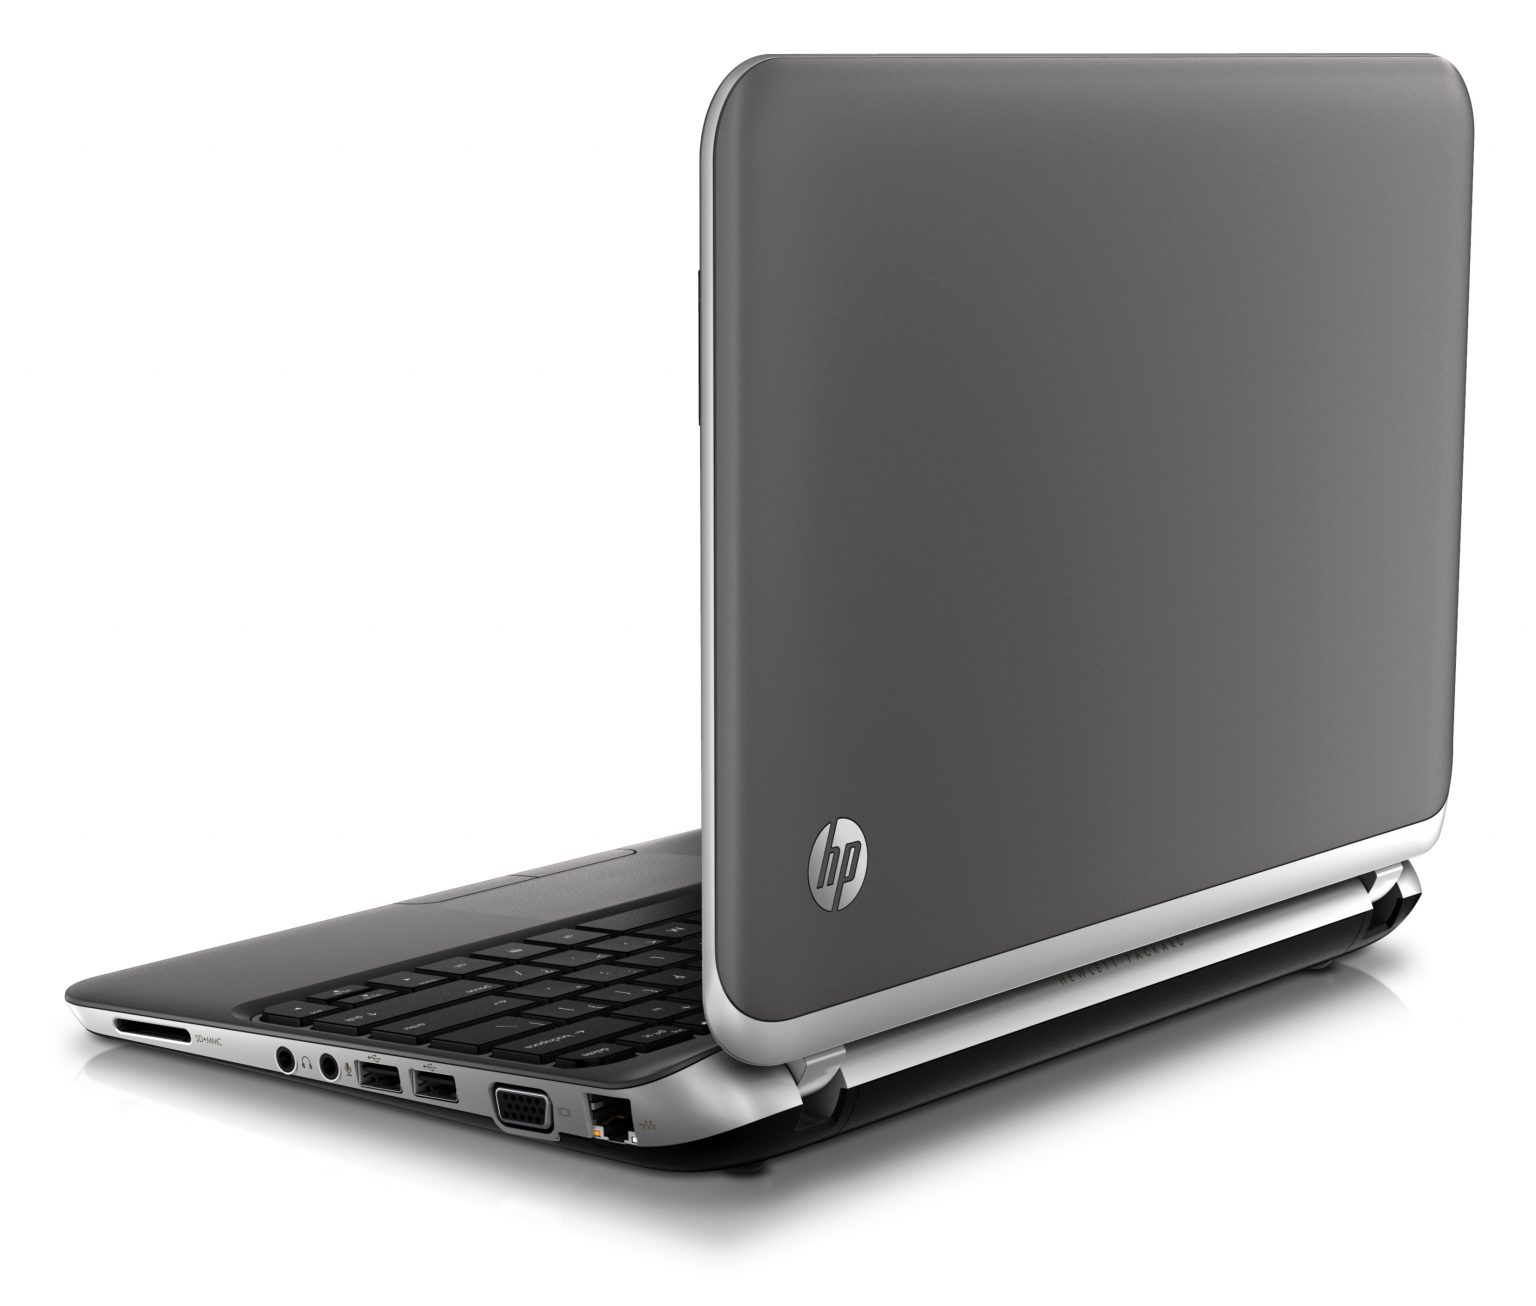 HP 3125 Mini Laptop - LinksYs